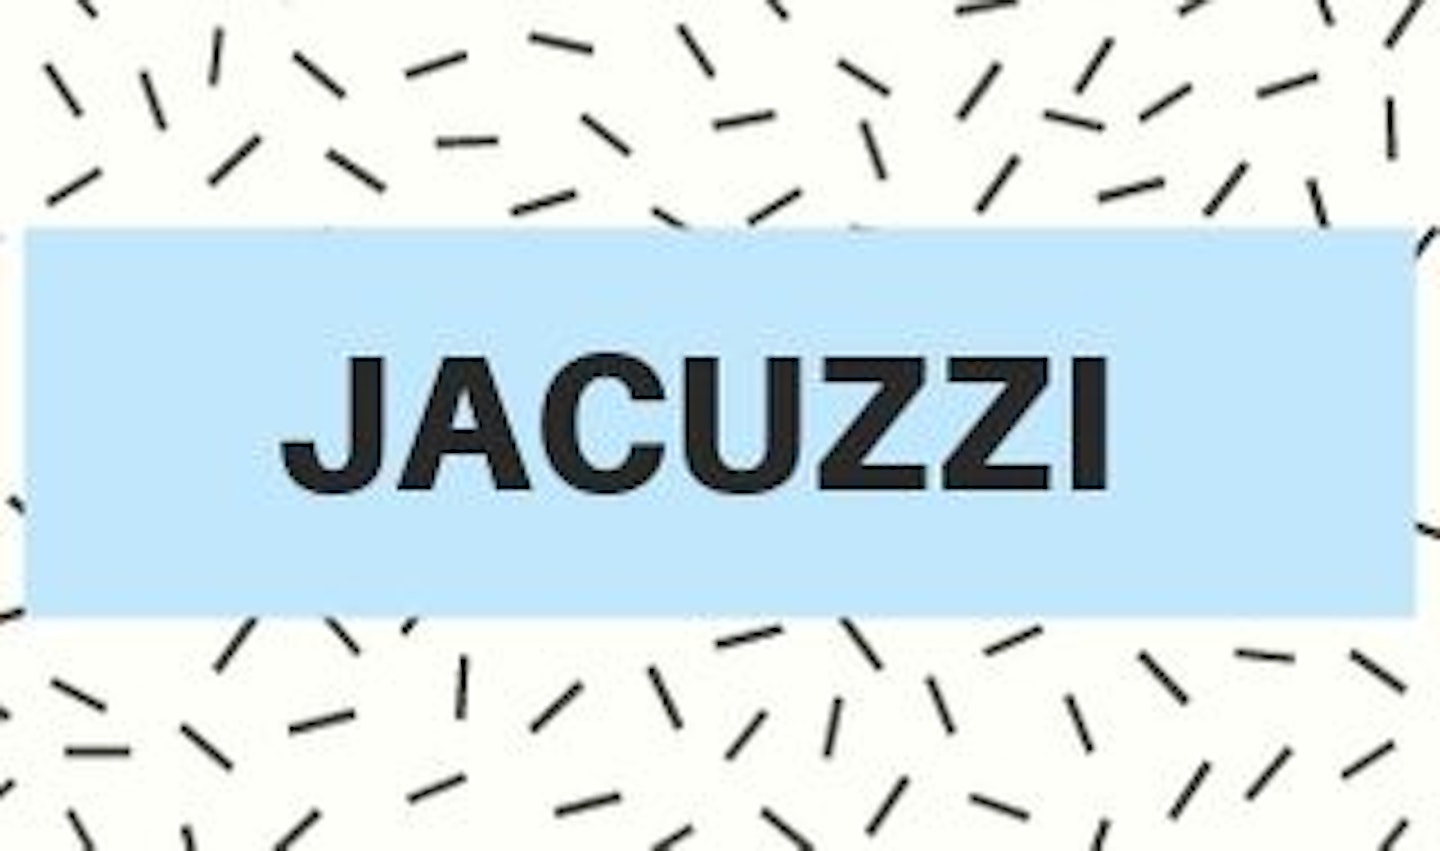 17) Jacuzzi